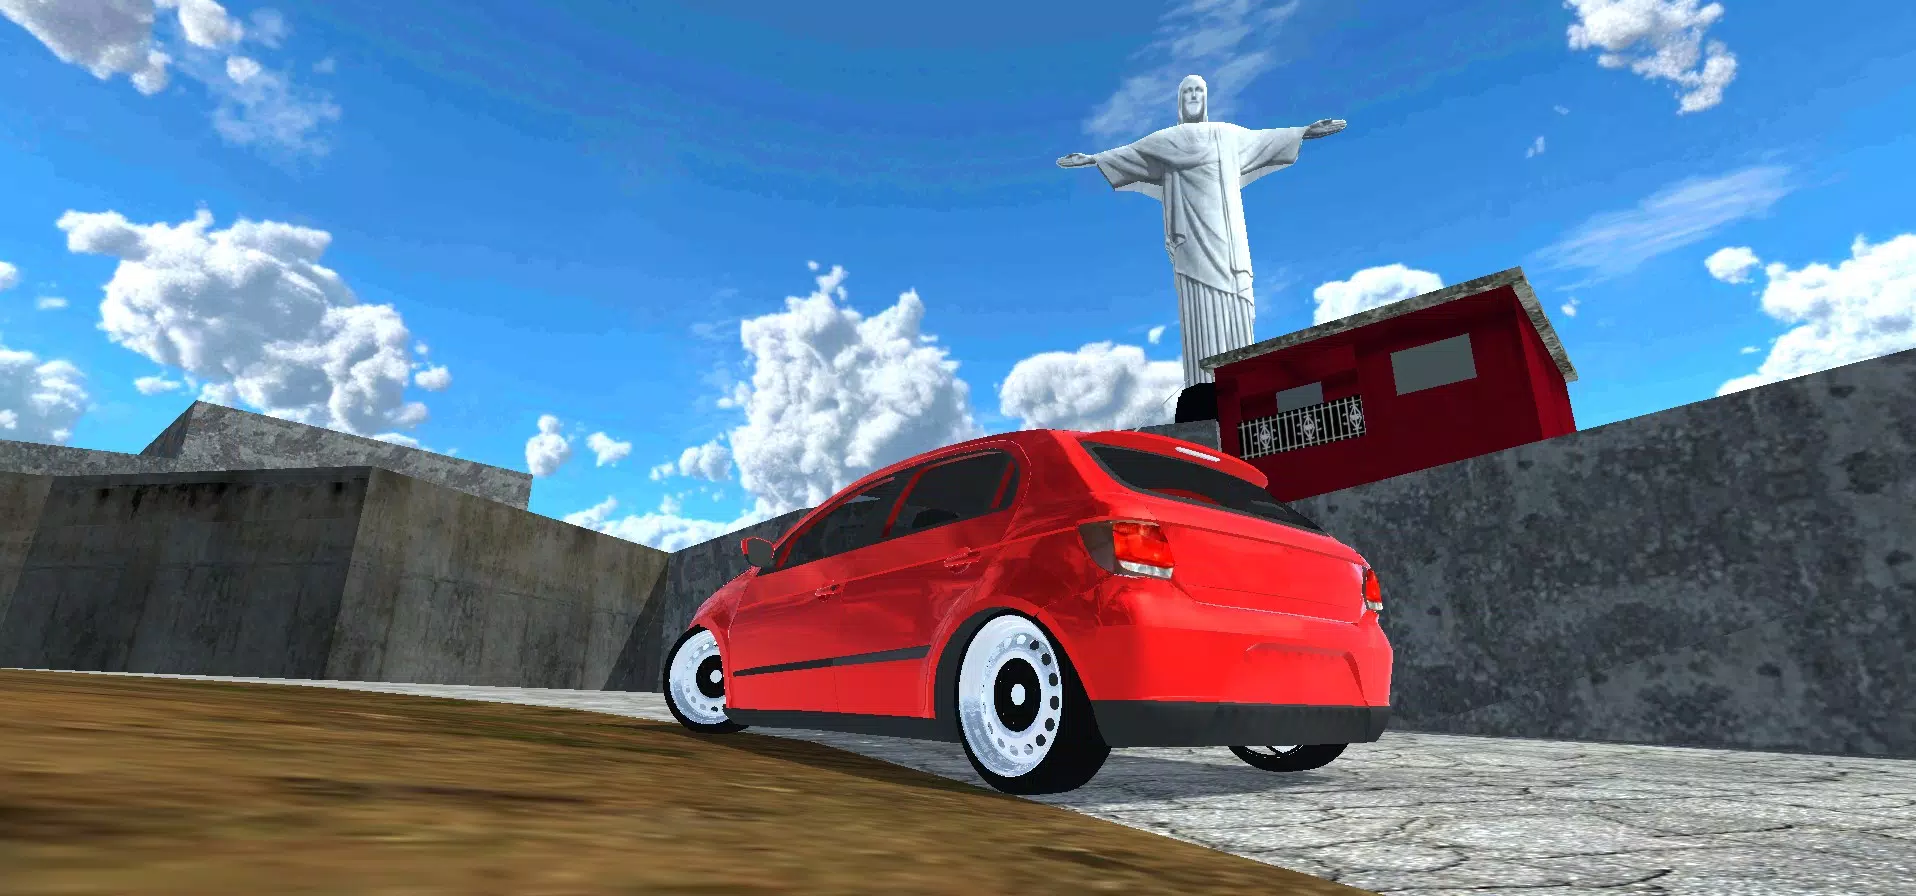 Carros Rebaixados Brasil 2 v4.5 Apk Mod - Dinheiro Infinito